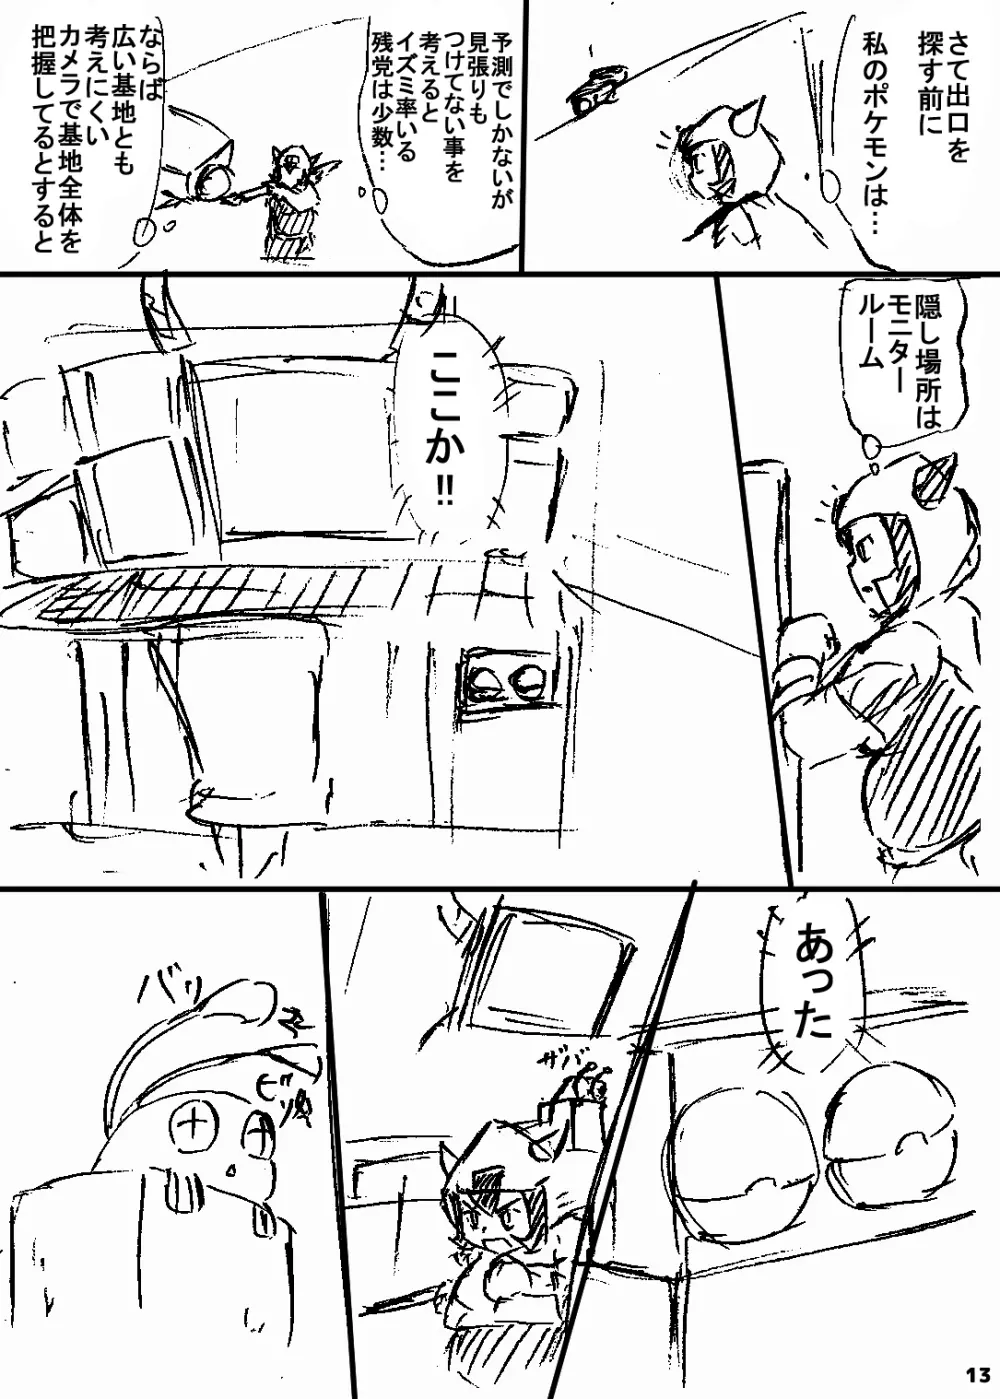 ポケスペカガリ肥満化漫画 12ページ